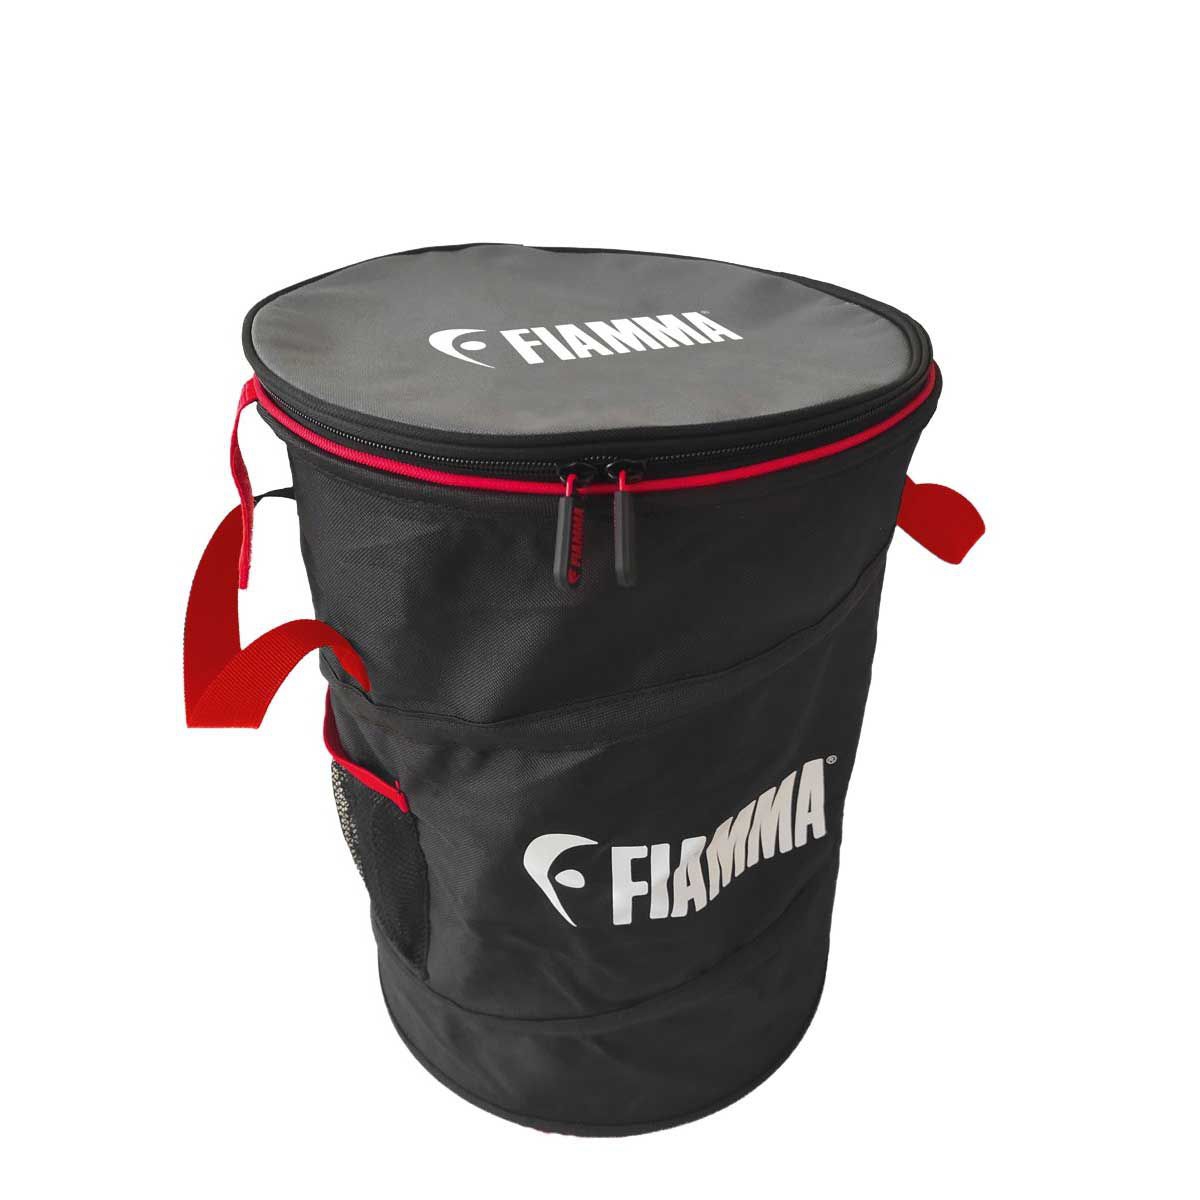 FIAMMA Pack Organizer Bin 08725-01